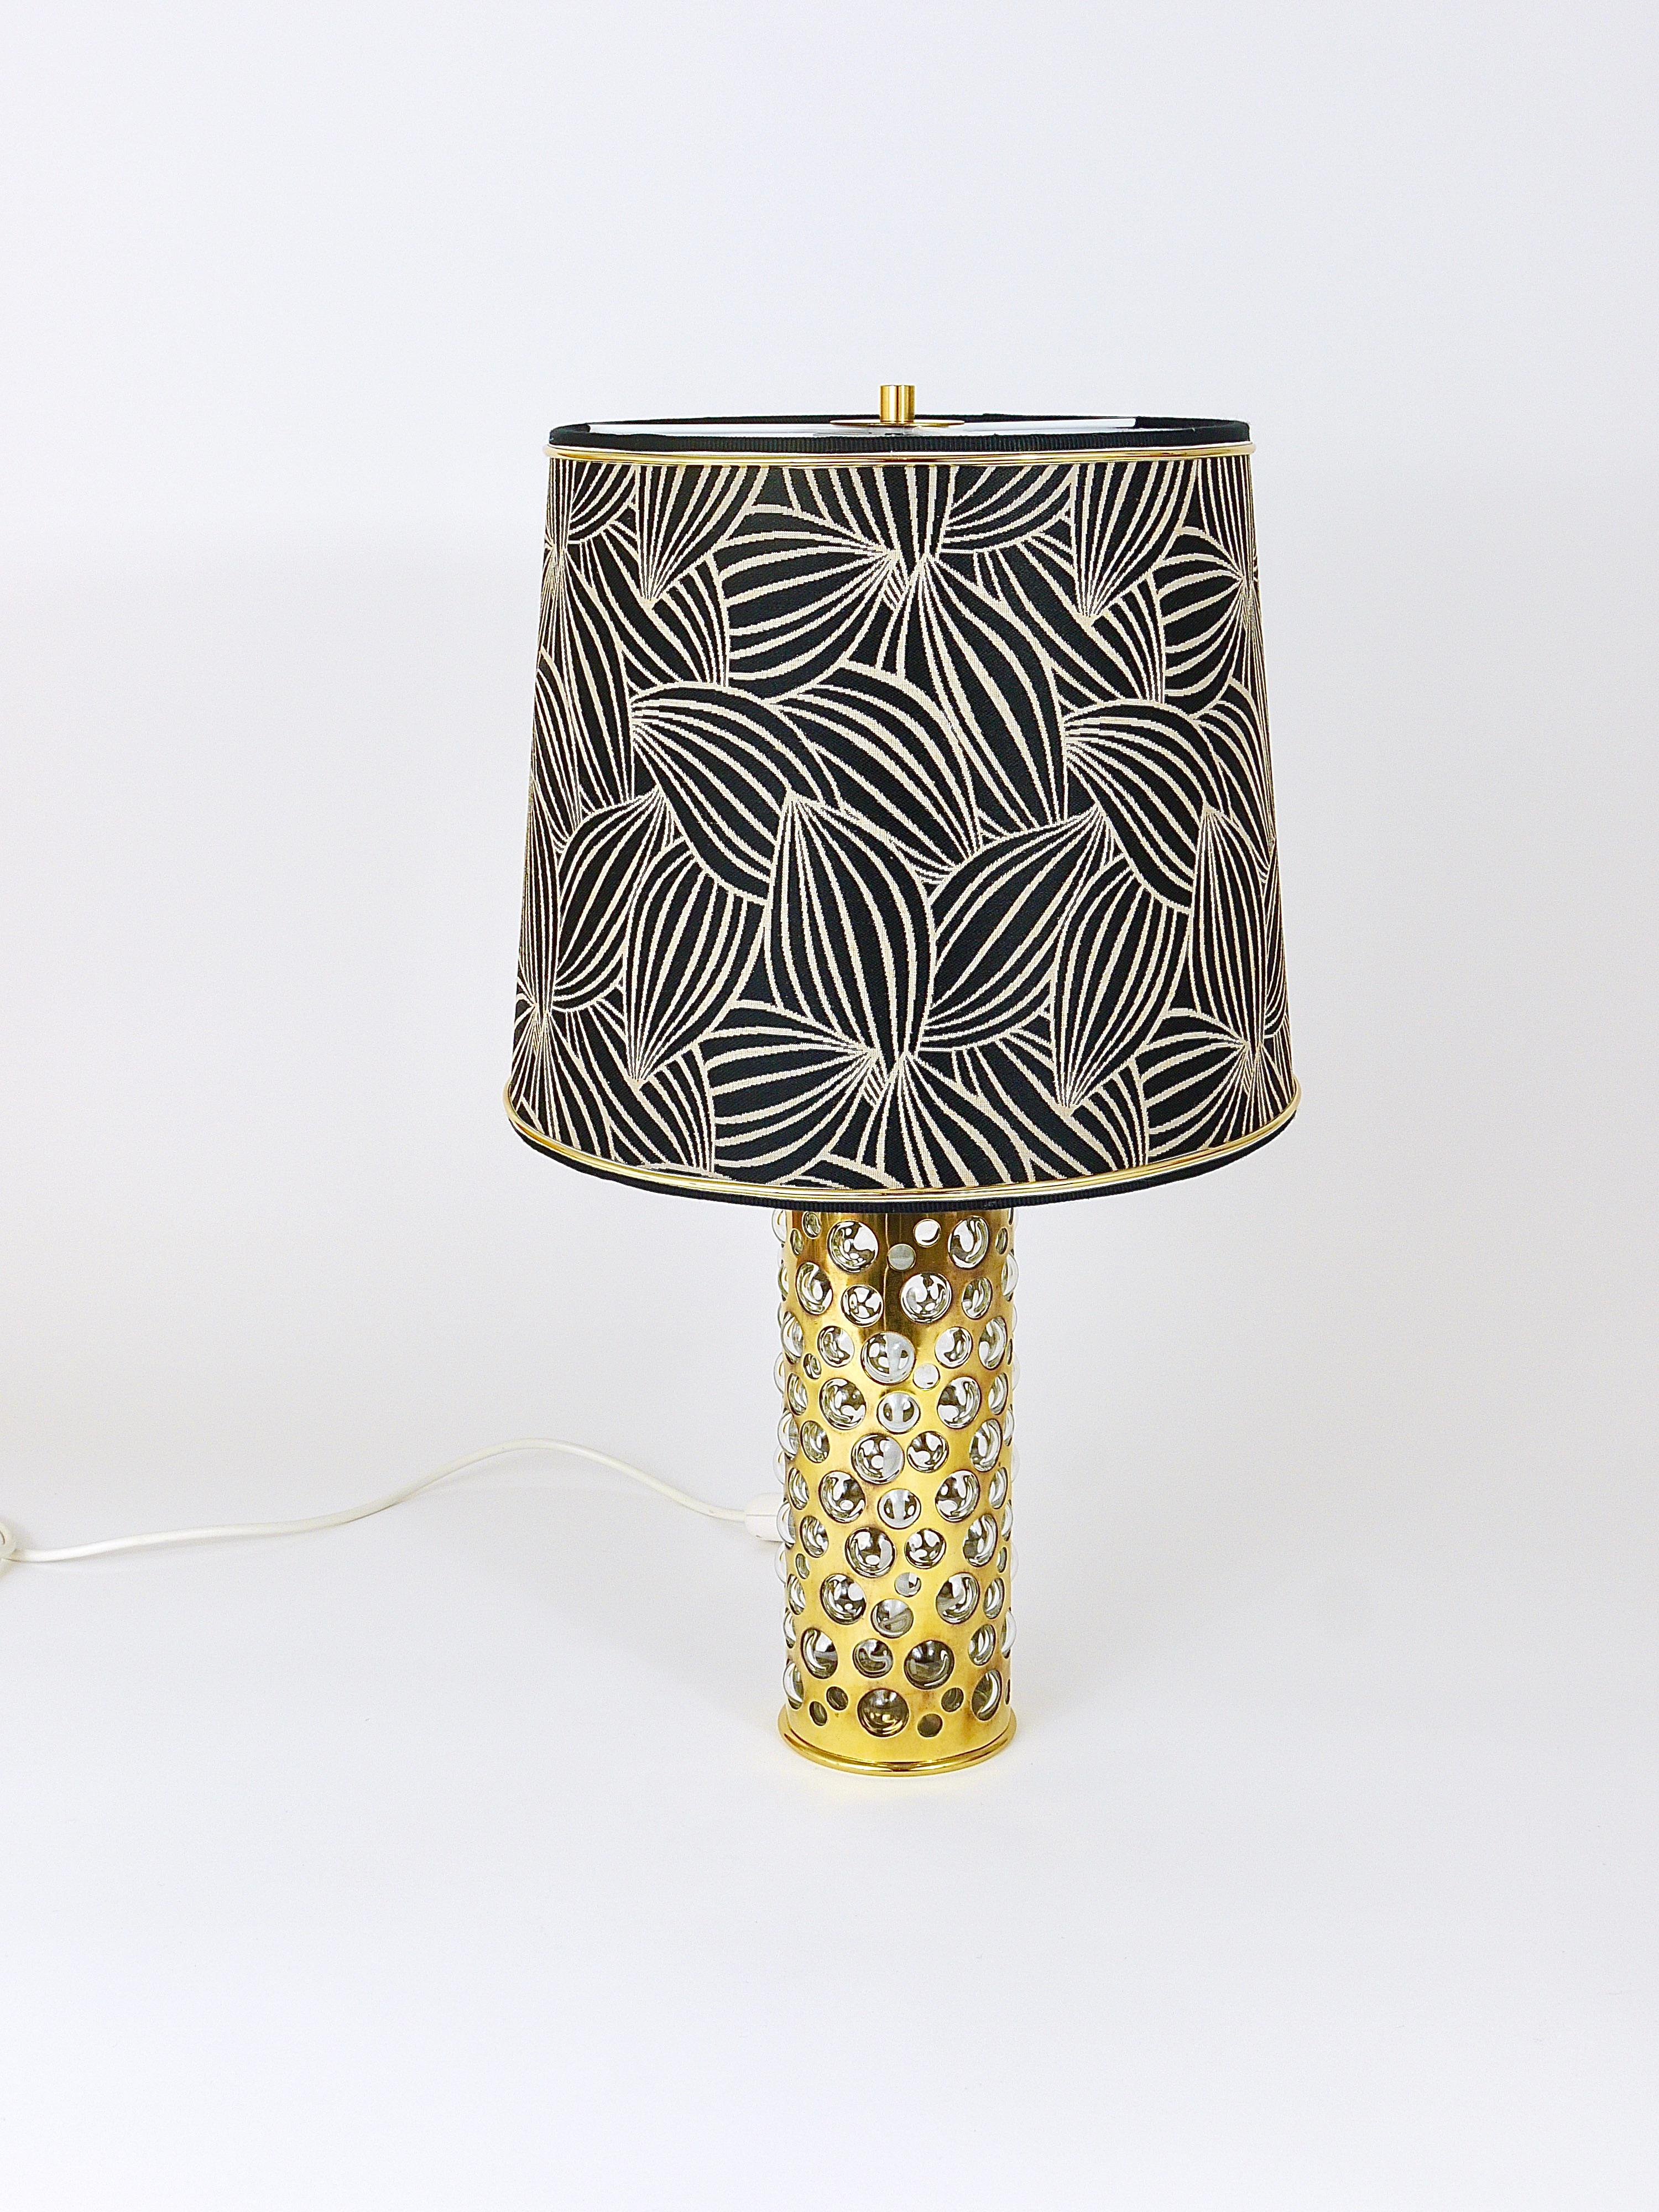 Eine schöne modernistische Tischlampe / Beistelllampe aus den 1950er Jahren, entworfen und ausgeführt von Rupert Nikoll Wien, Österreich. Aus poliertem Messing und mundgeblasenem Klarglas mit Blasen in verschiedenen Größen. Wird mit einem